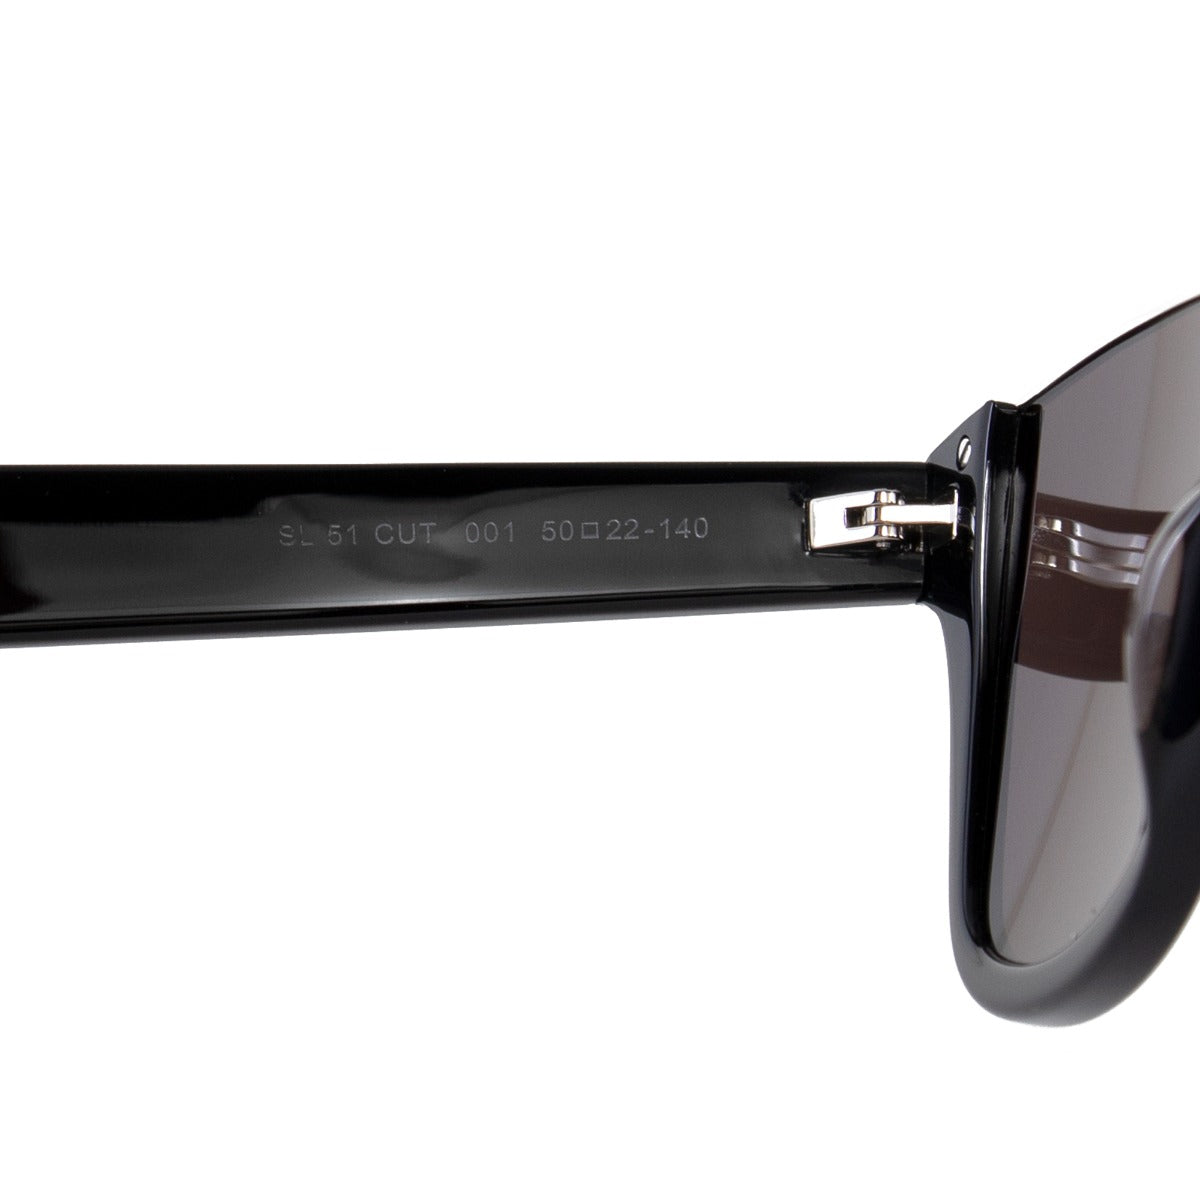 title:Saint Laurent Square Sunglasses SL51 001 50;color:Black